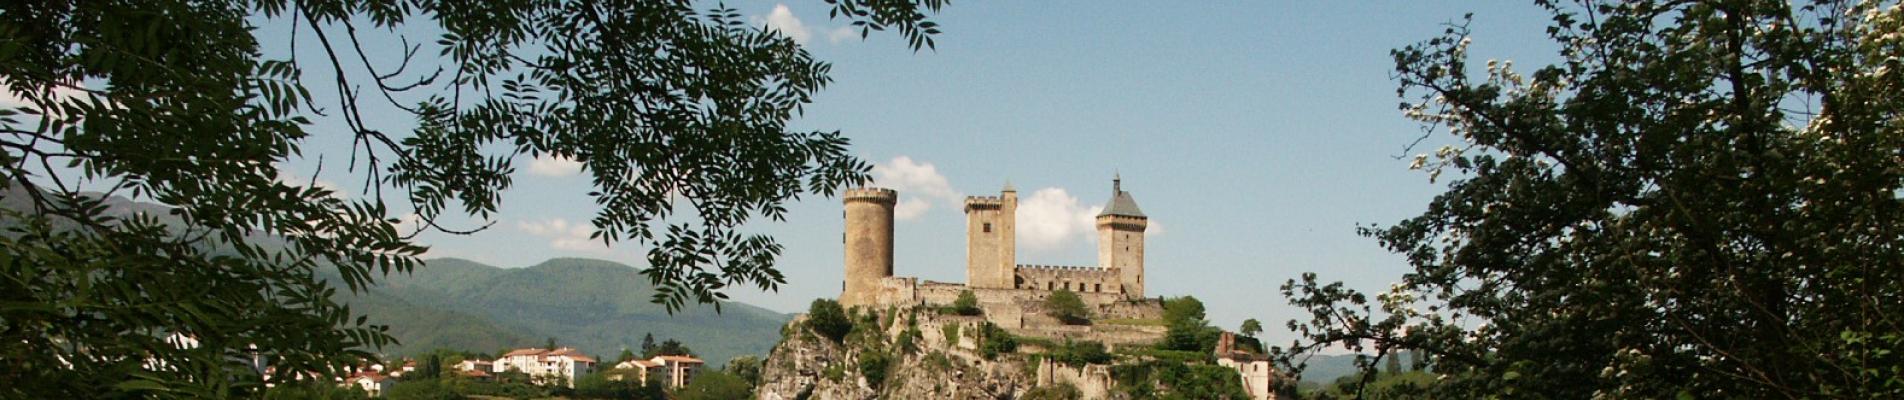 Château de Foix, Ariège